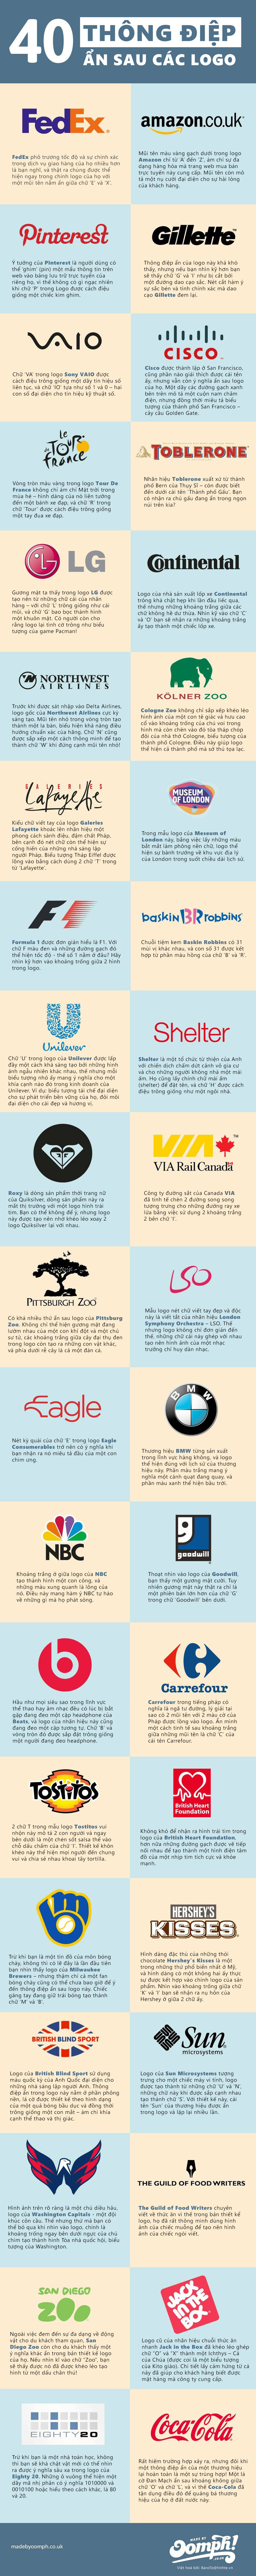 [Infographic] 40 logo ẩn chứa thông điệp doanh nghiệp 6